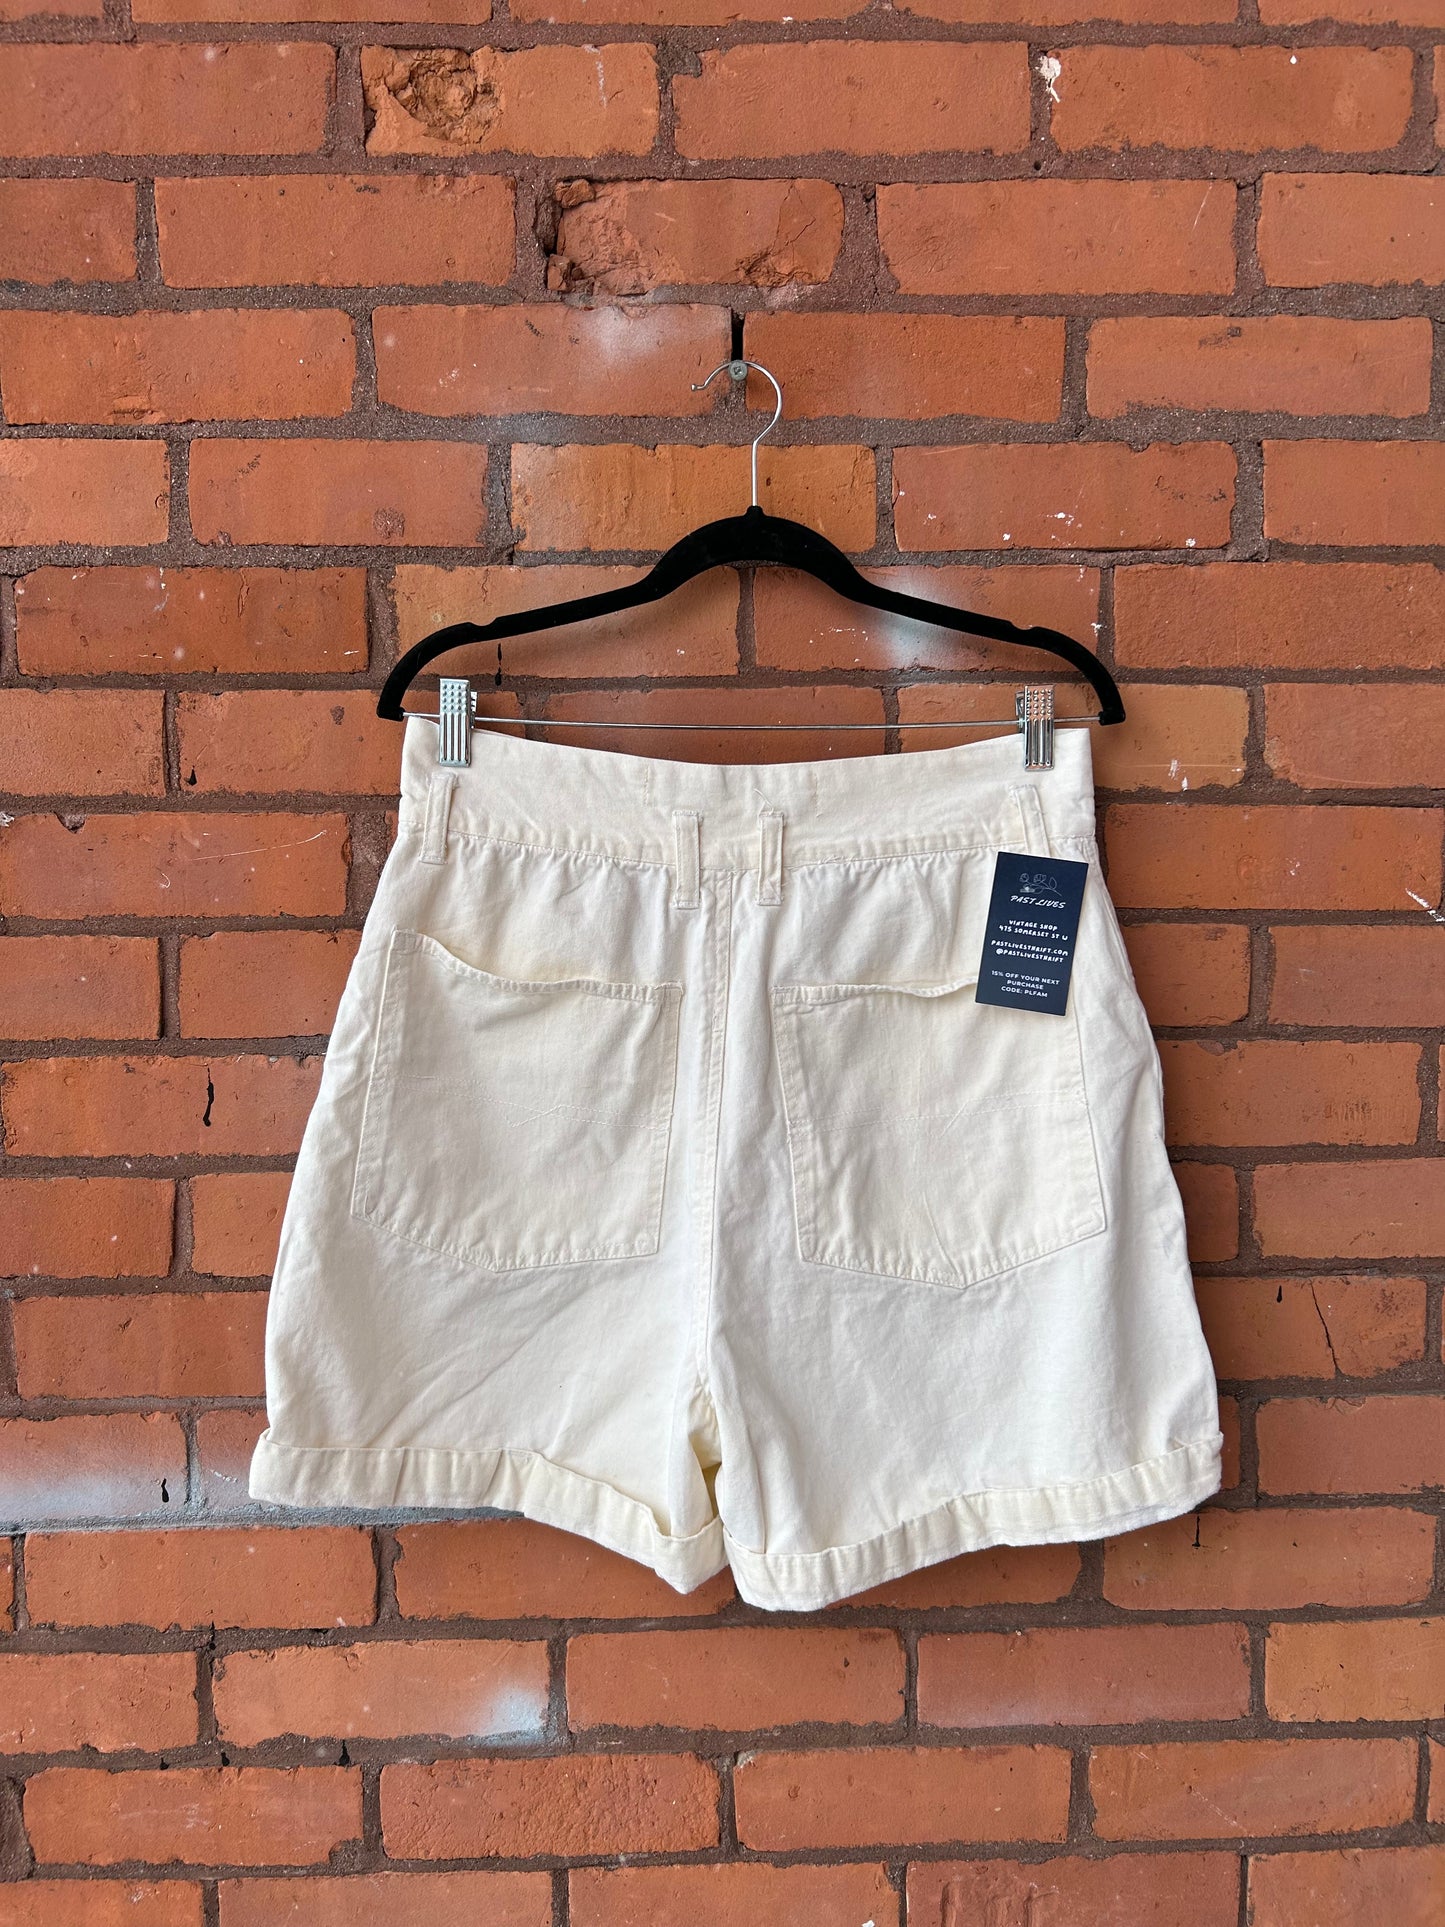 90’s Vintage Cream Cotton High Waist Shorts / 32 Waist